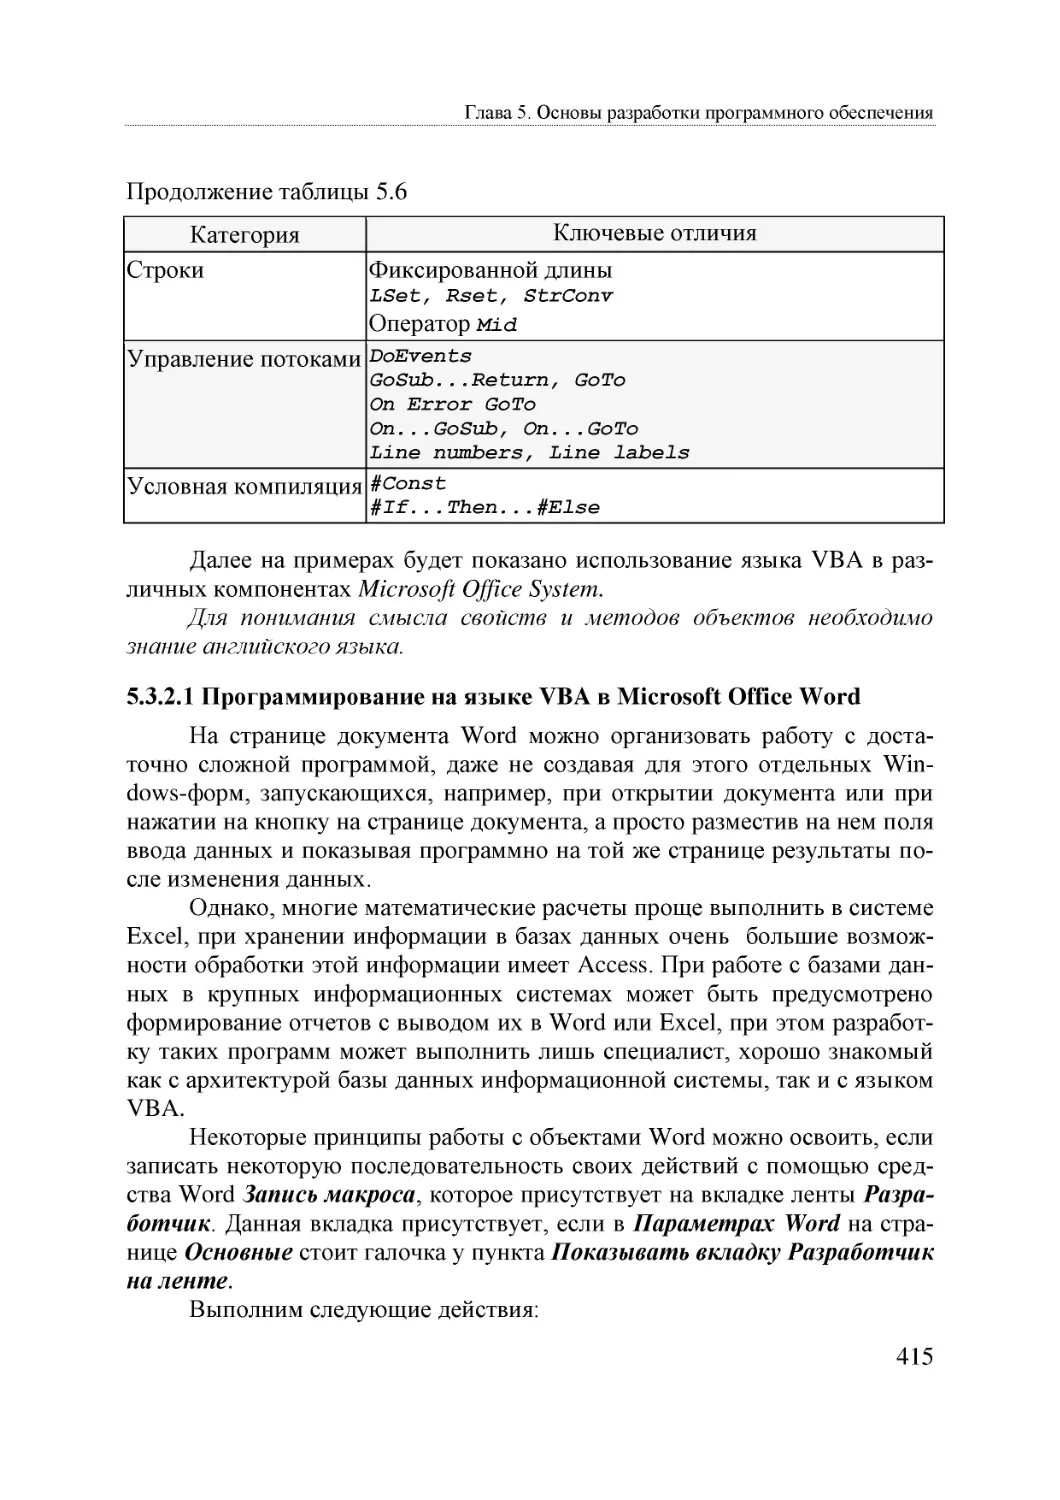 Informatika_Uchebnik_dlya_vuzov_2010 415